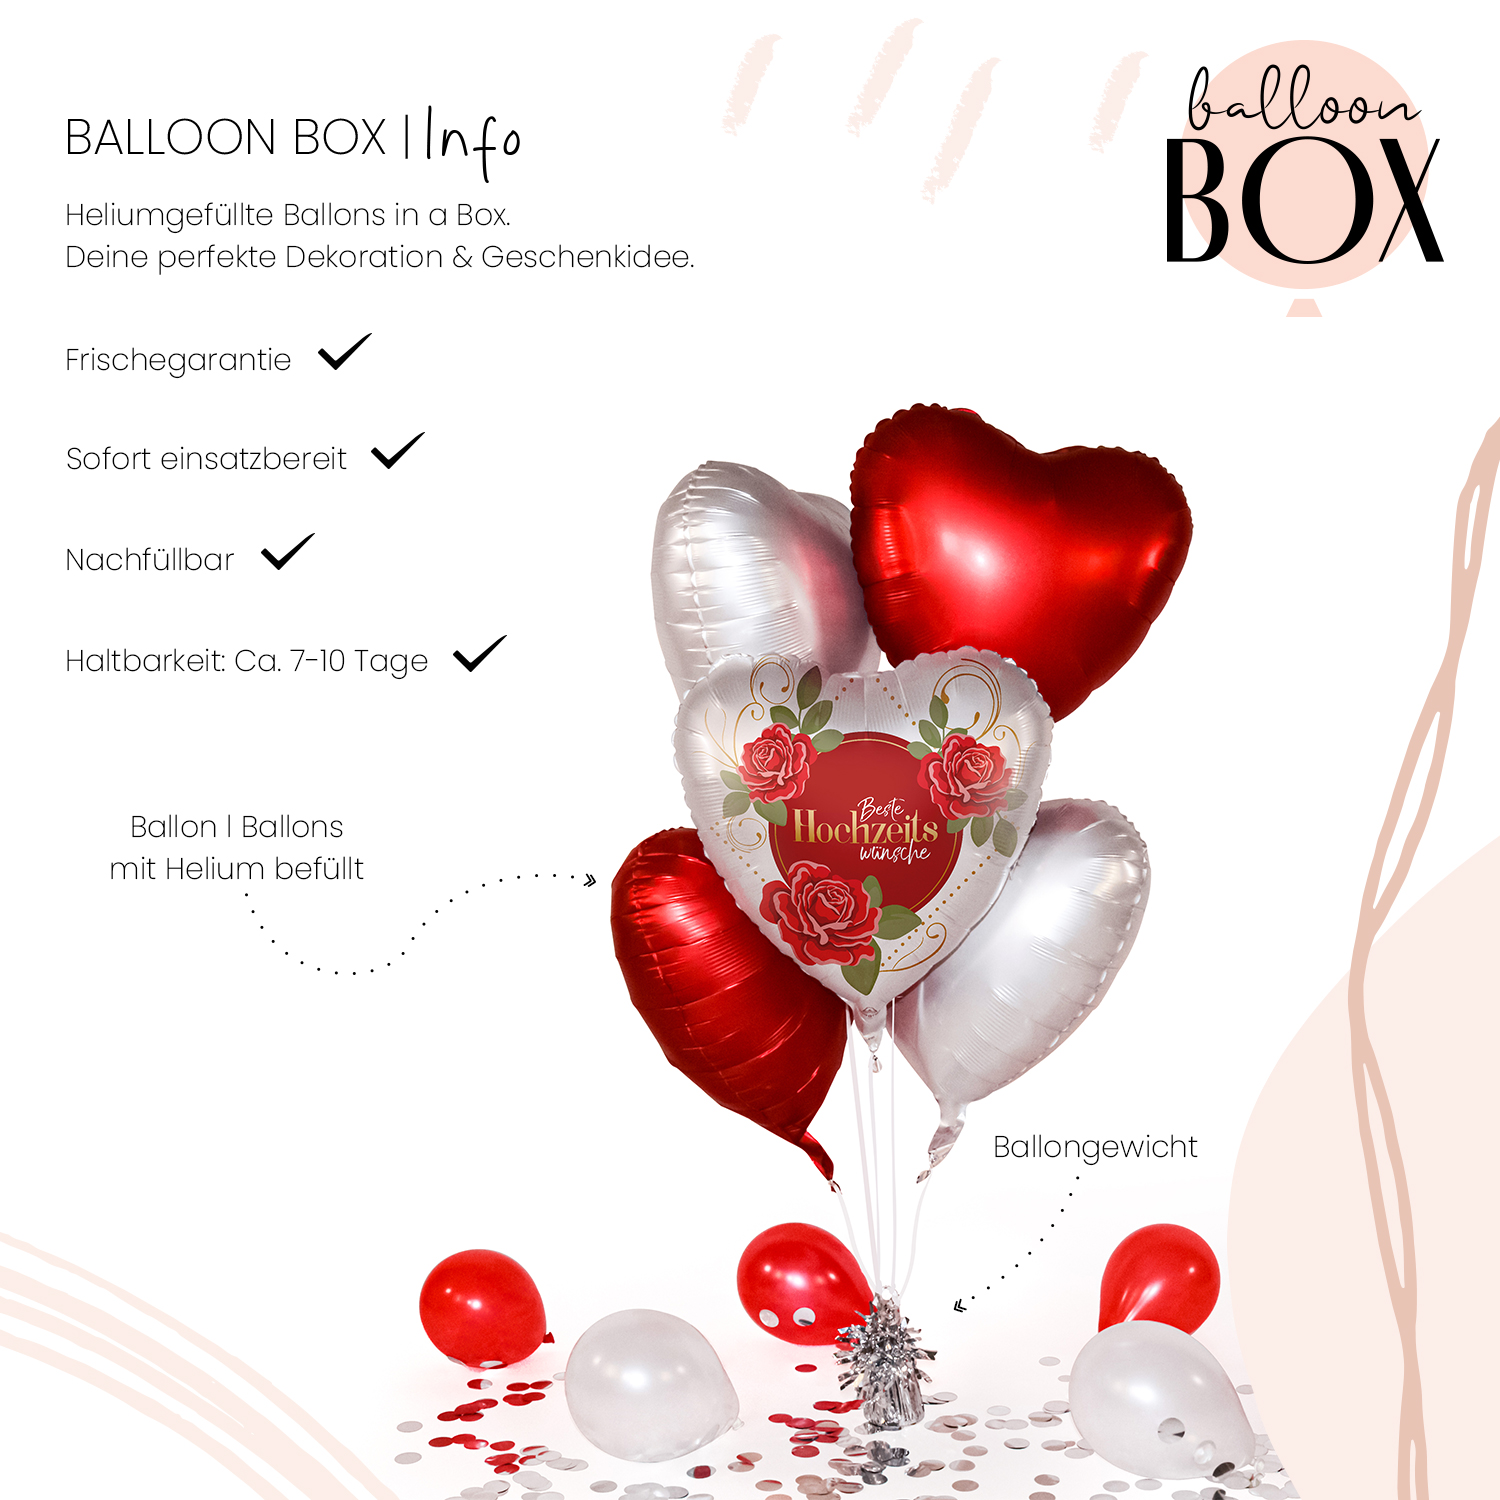 Heliumballon in a Box - Hochzeitswünsche